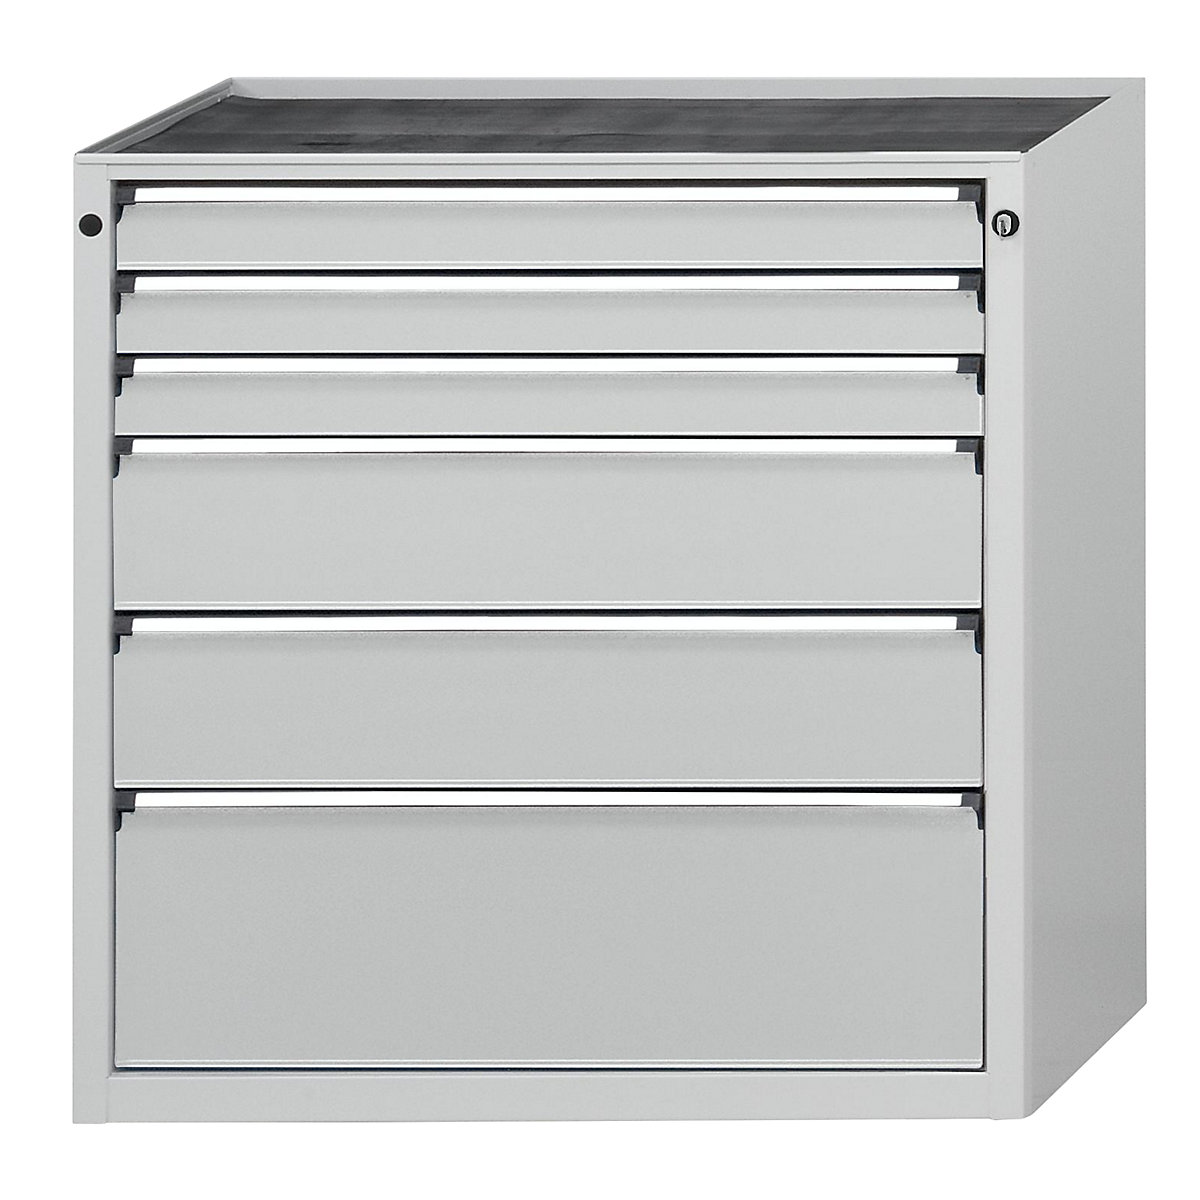 Armoire à tiroirs sans plateau – ANKE, largeur 910 mm, charge max. tiroirs 200 kg, 6 tiroirs, façade gris clair-4